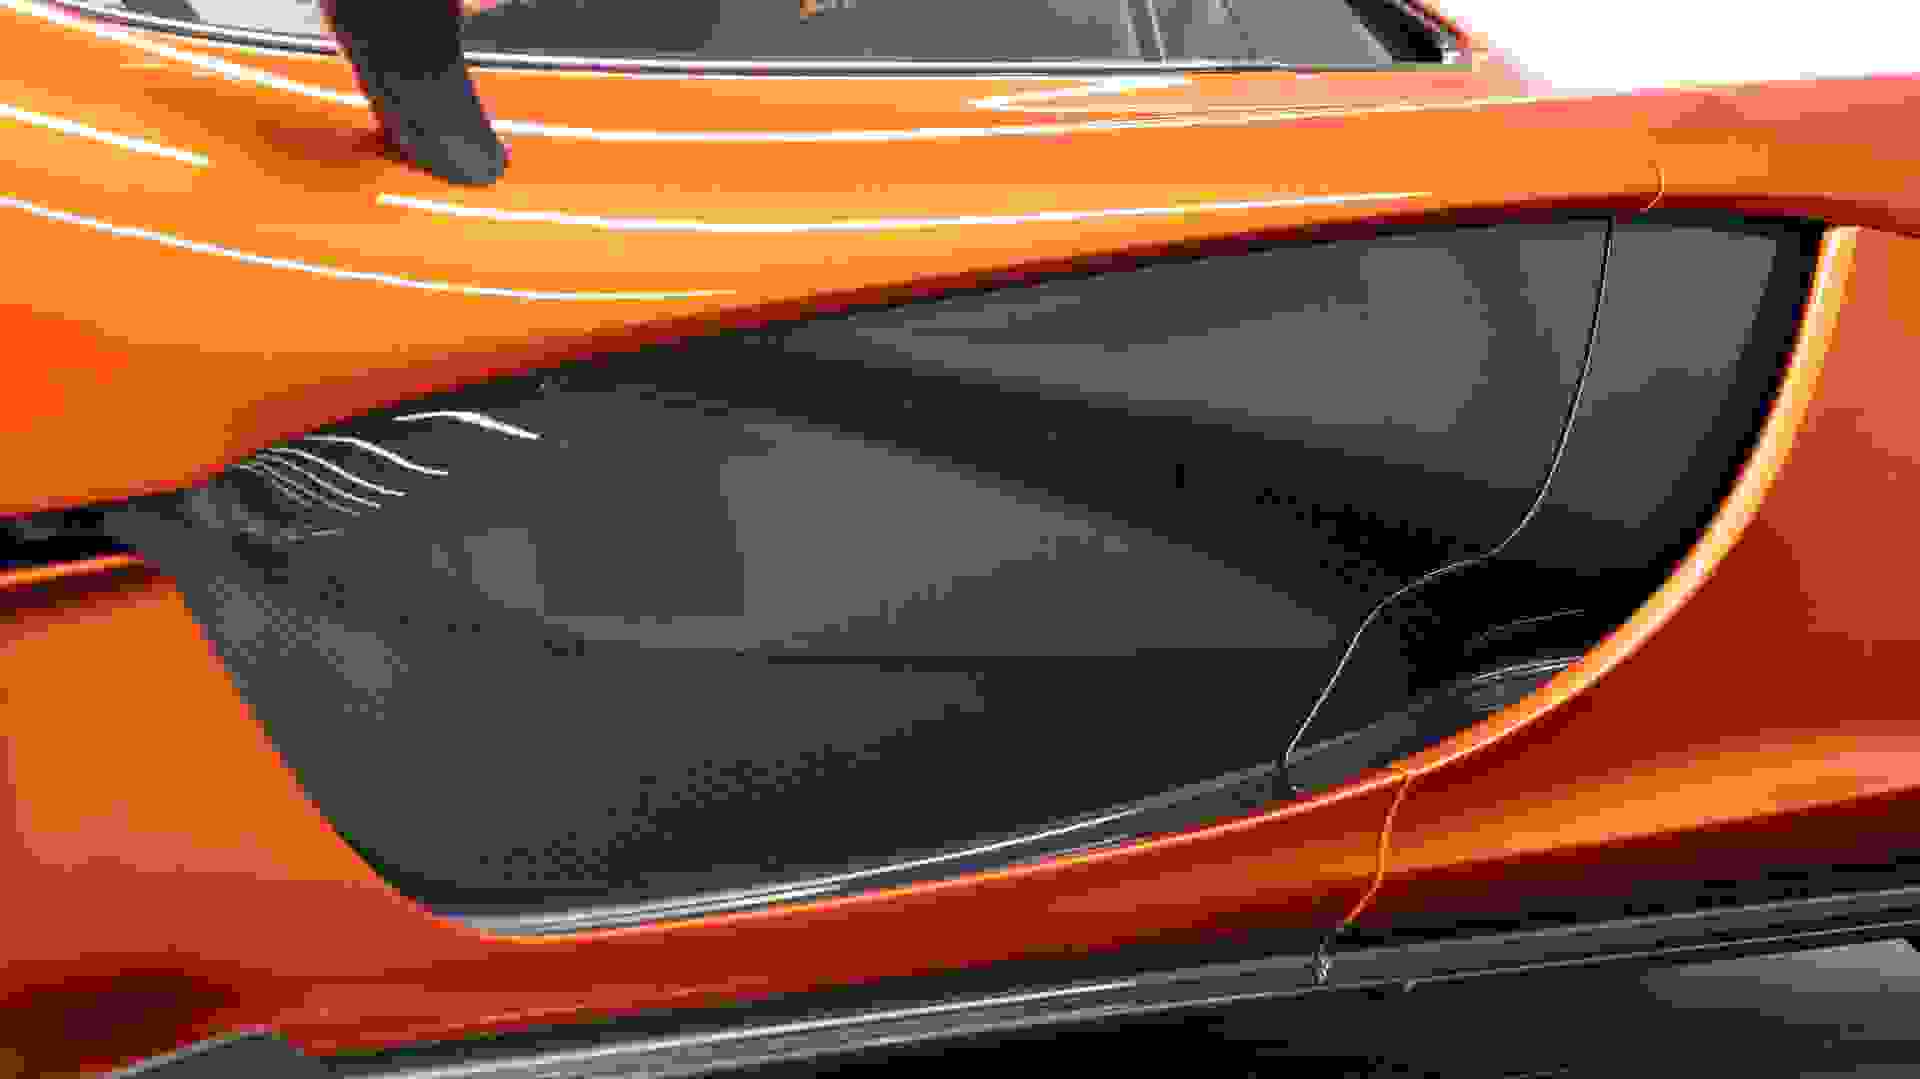 McLaren P1 Photo d5aba0fa-b2e1-44cd-9de4-8283acedb14f.jpg